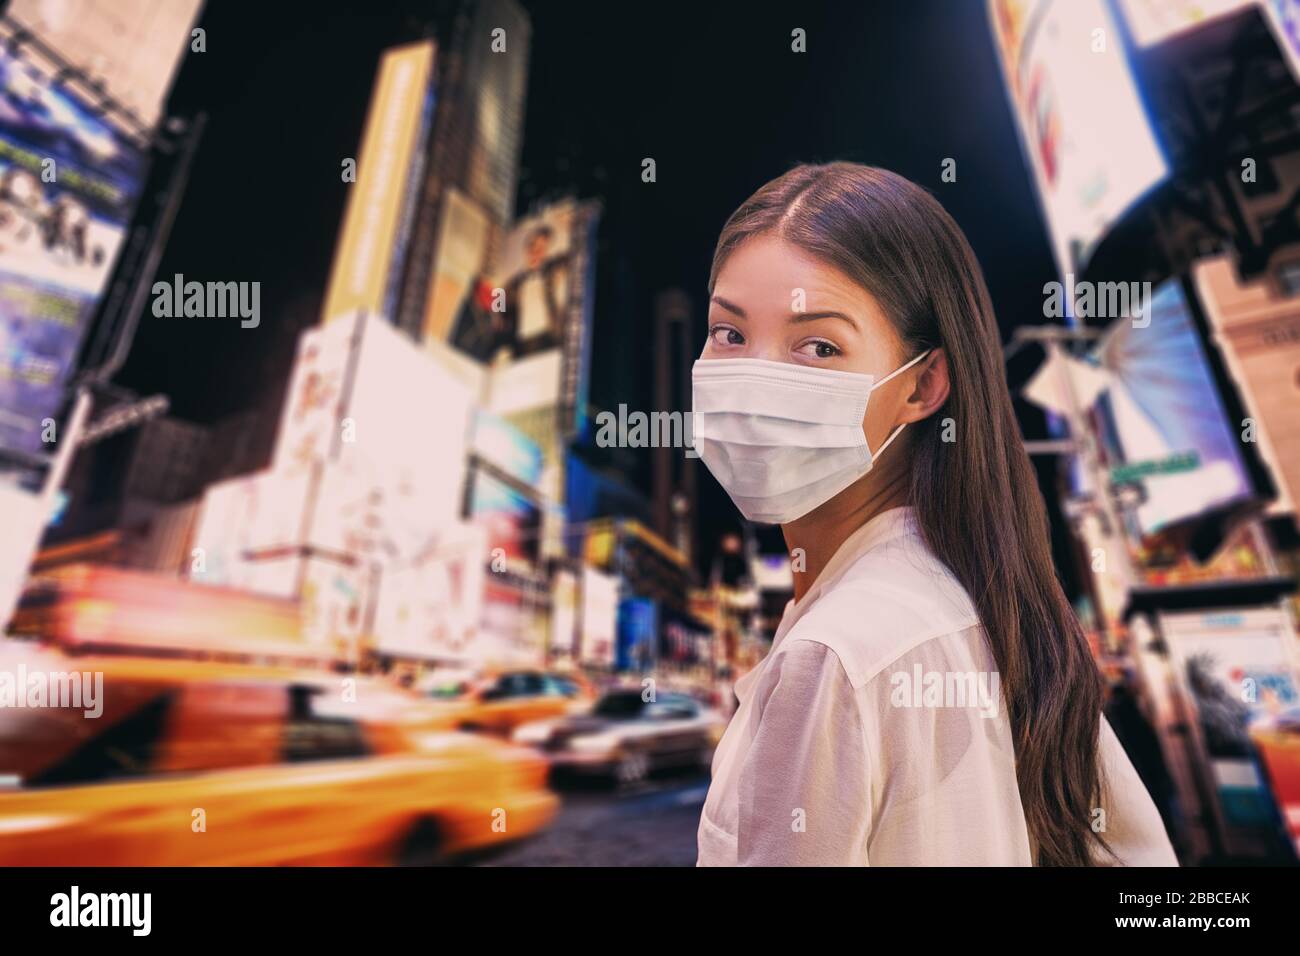 Fälle von New York City COVID-19 Coronavirus. NYC Quarantäne Reise-Verbot asiatische Frauen tragen Gesichtsmaske gehen nachts auf dem Times Square. Corona-Virus. Stockfoto